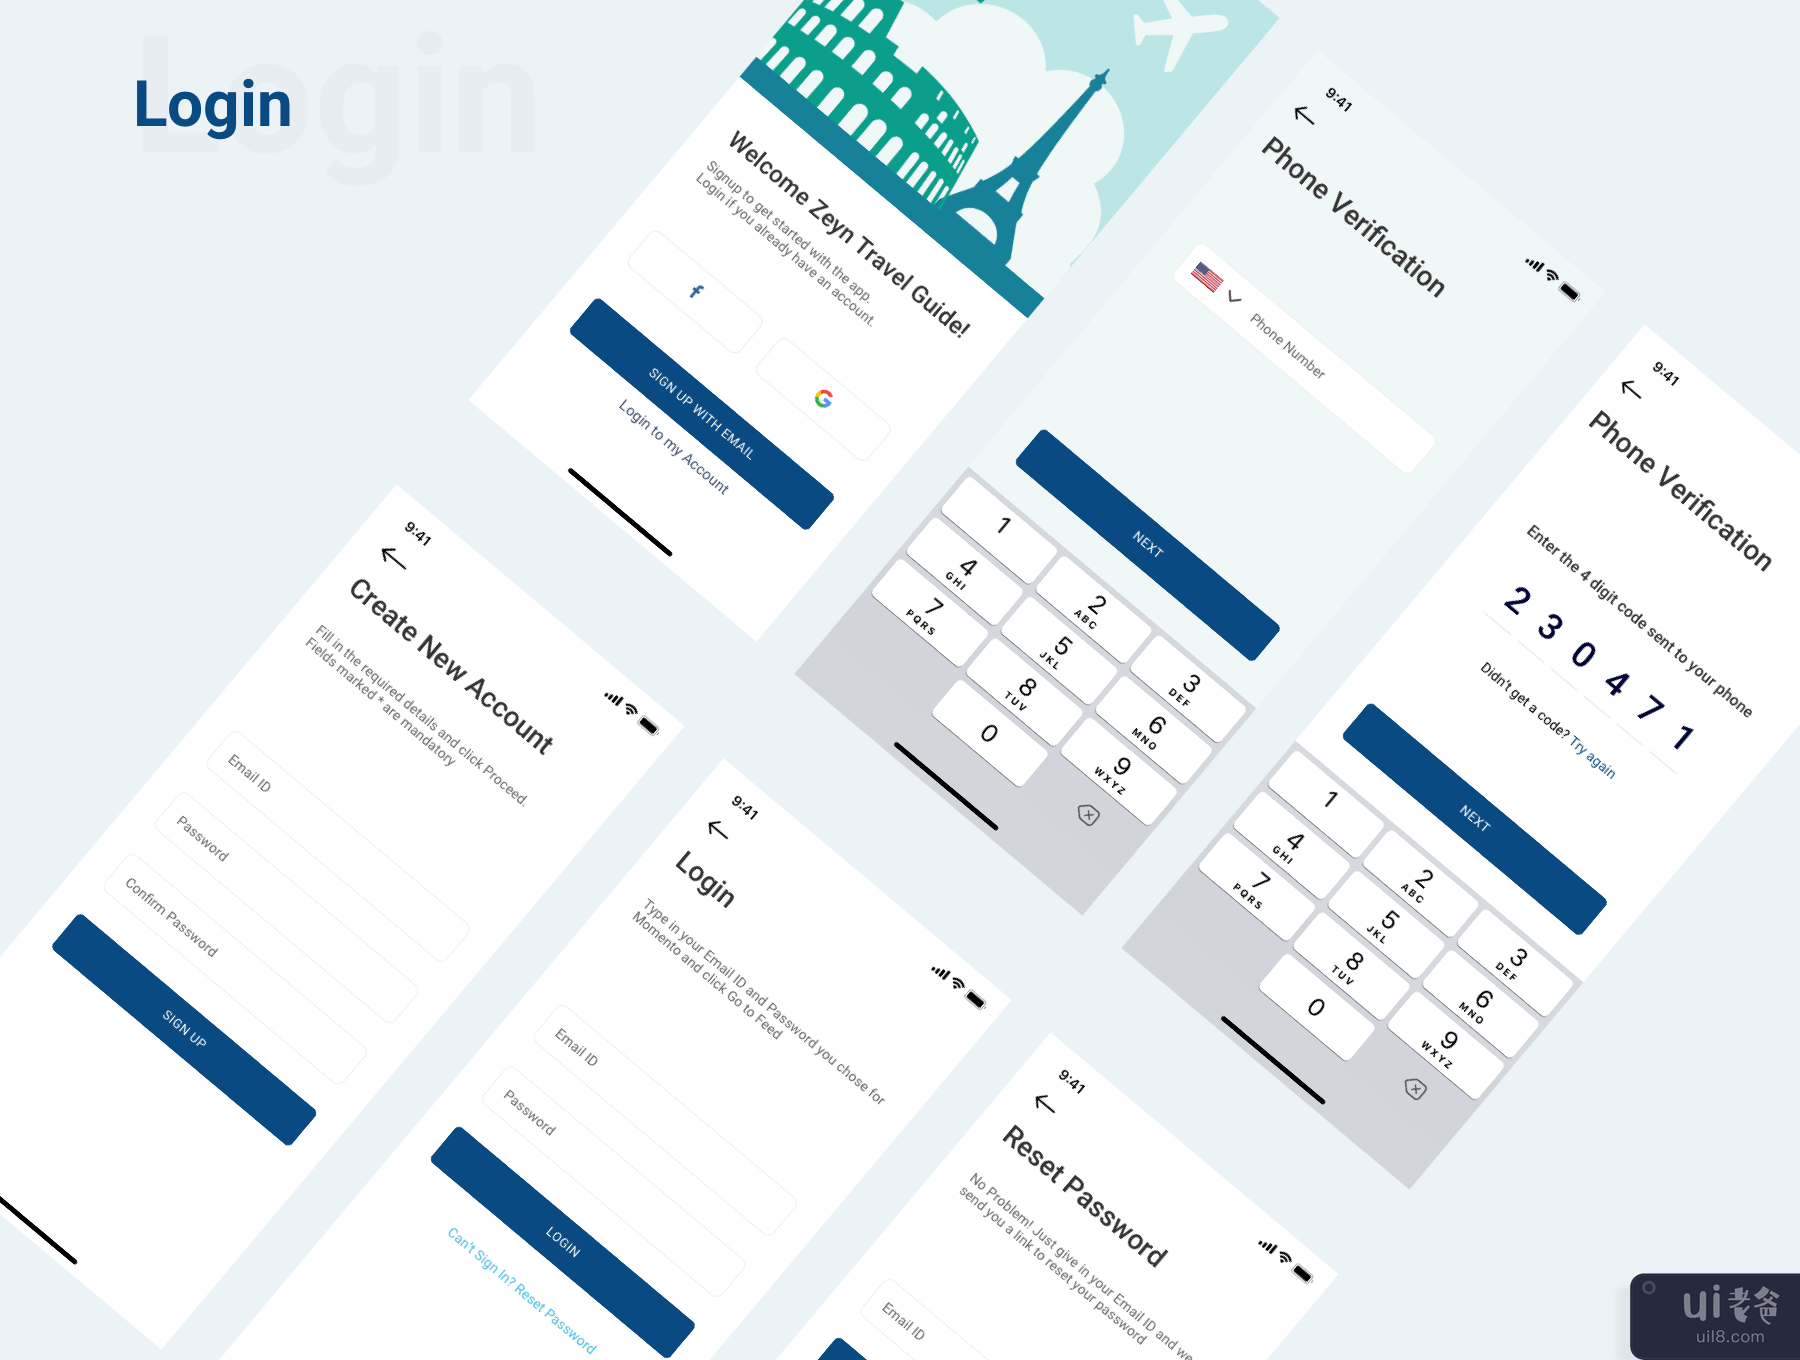 Zeyn 旅游指南 UI 套件(Zeyn Travel Guide UI Kit)插图3